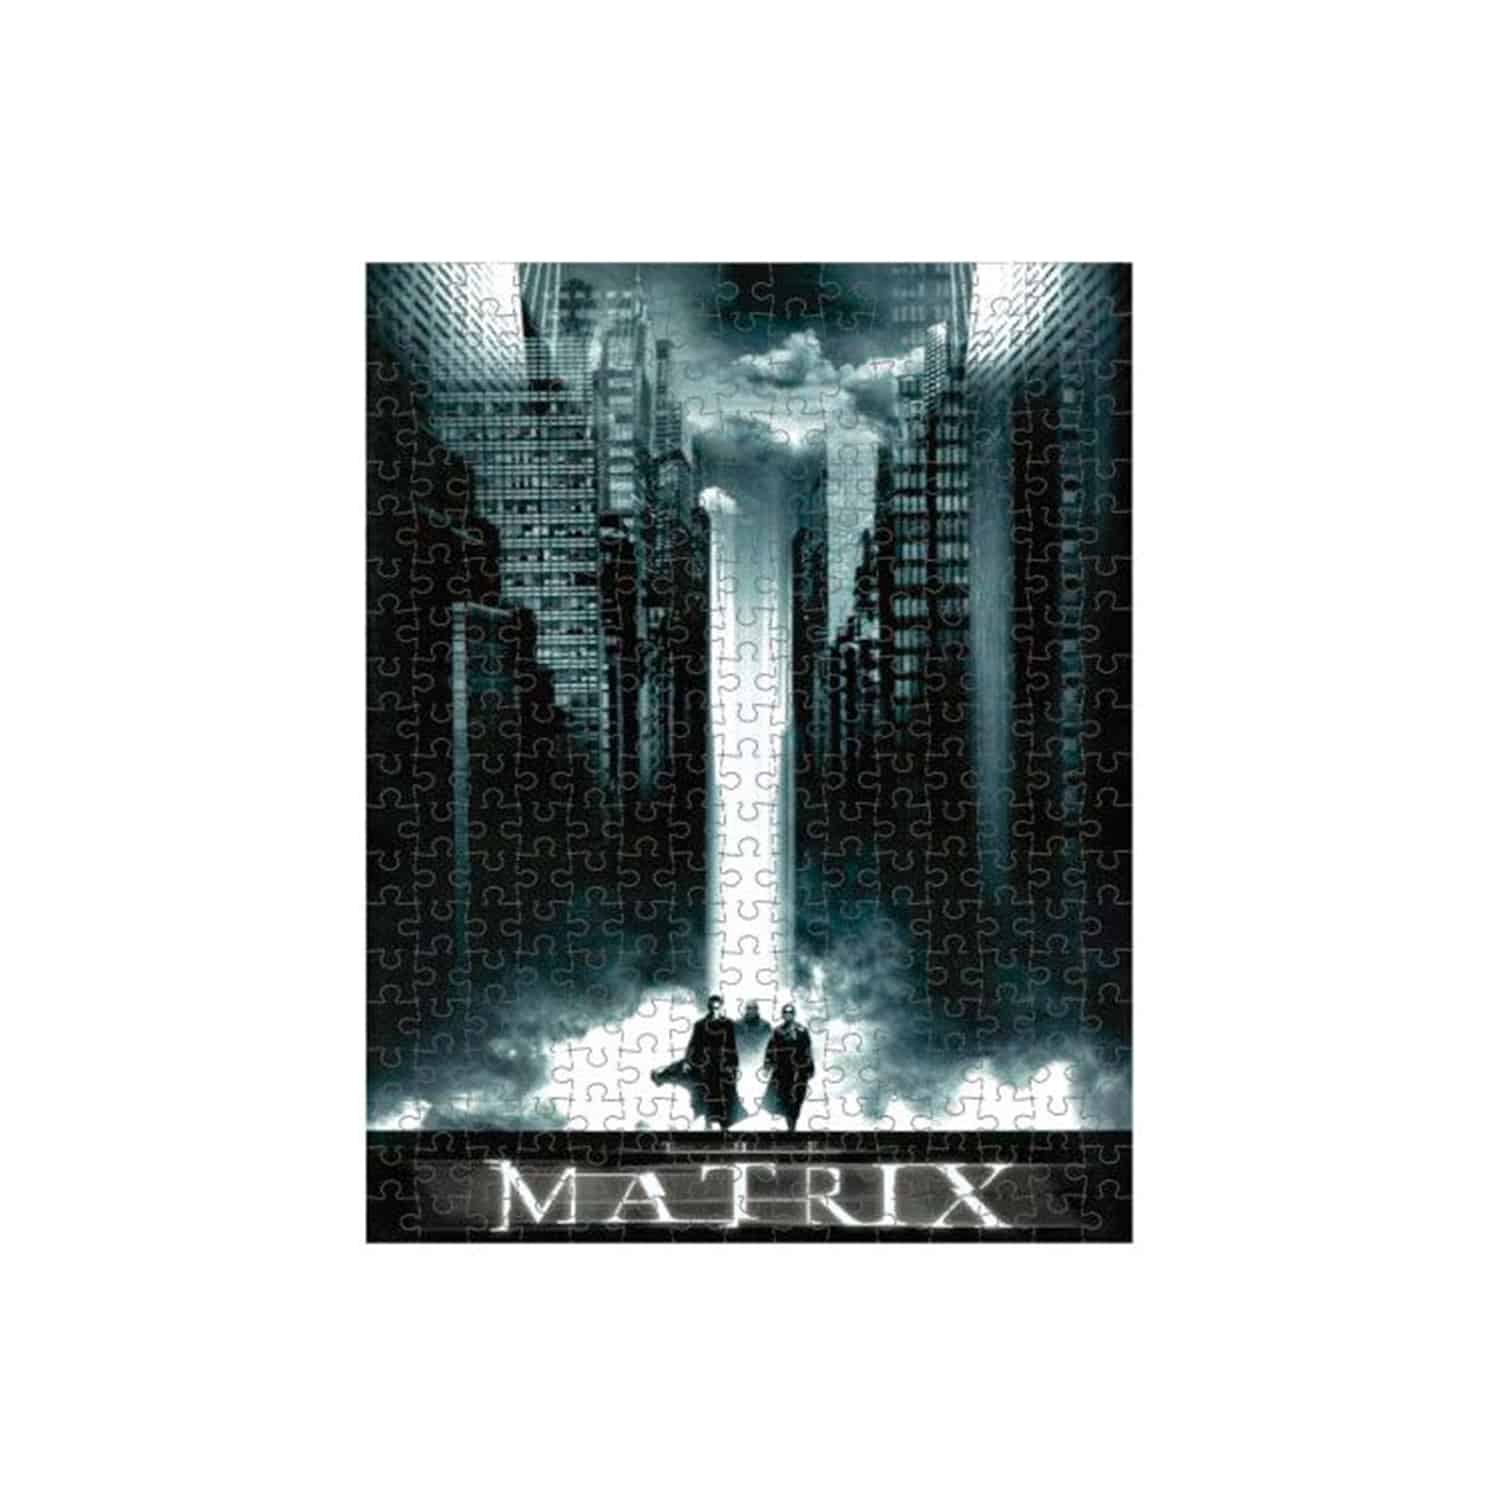 The Matrix - Puzzle 300pcs